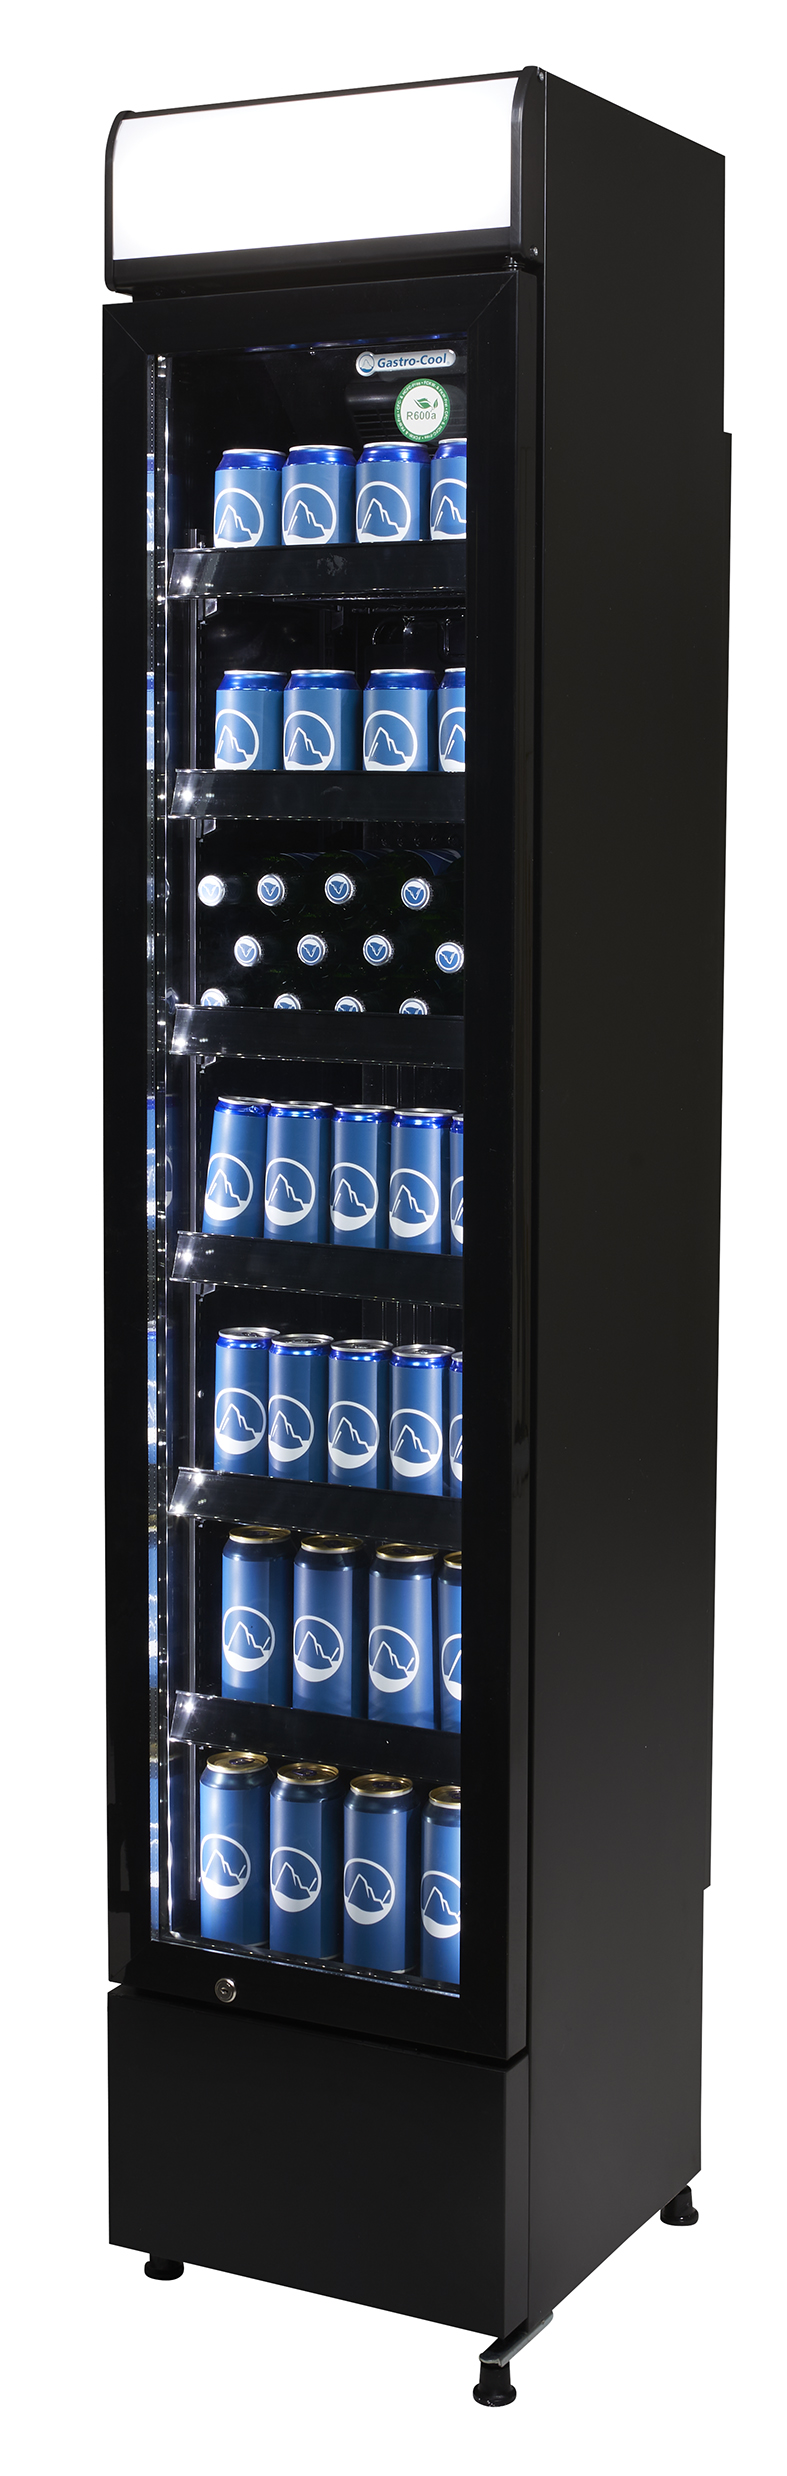 Gastro-Cool - GCDC130 schmaler Werbekühlschrank in schwarz - power LED - Seitenansicht gefüllt